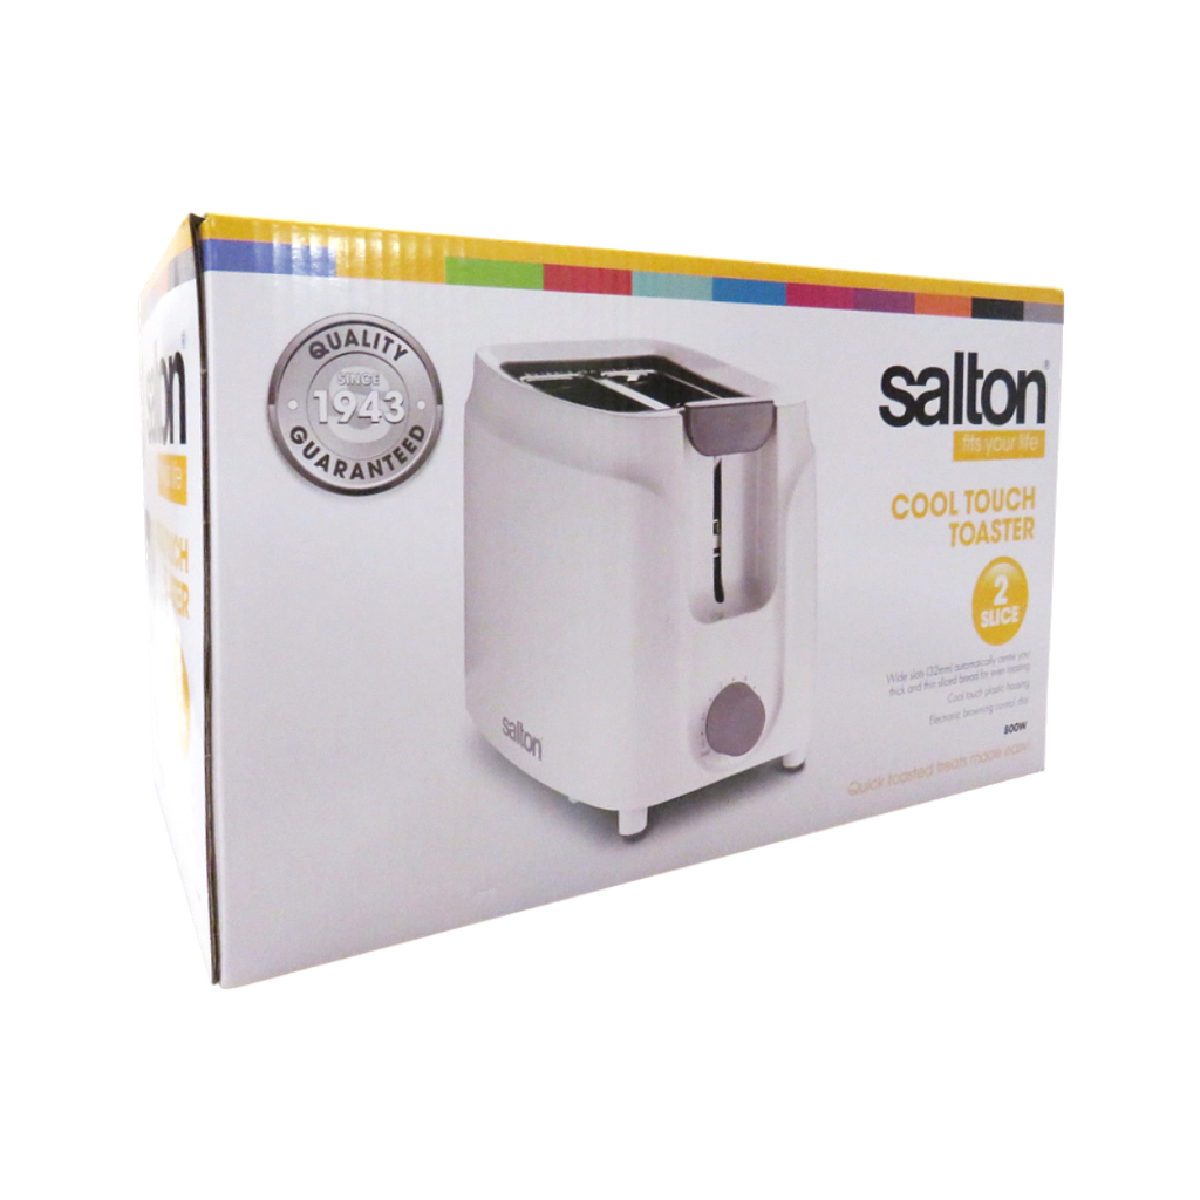 Salton Toaster, Cool Touch White 2 Slice